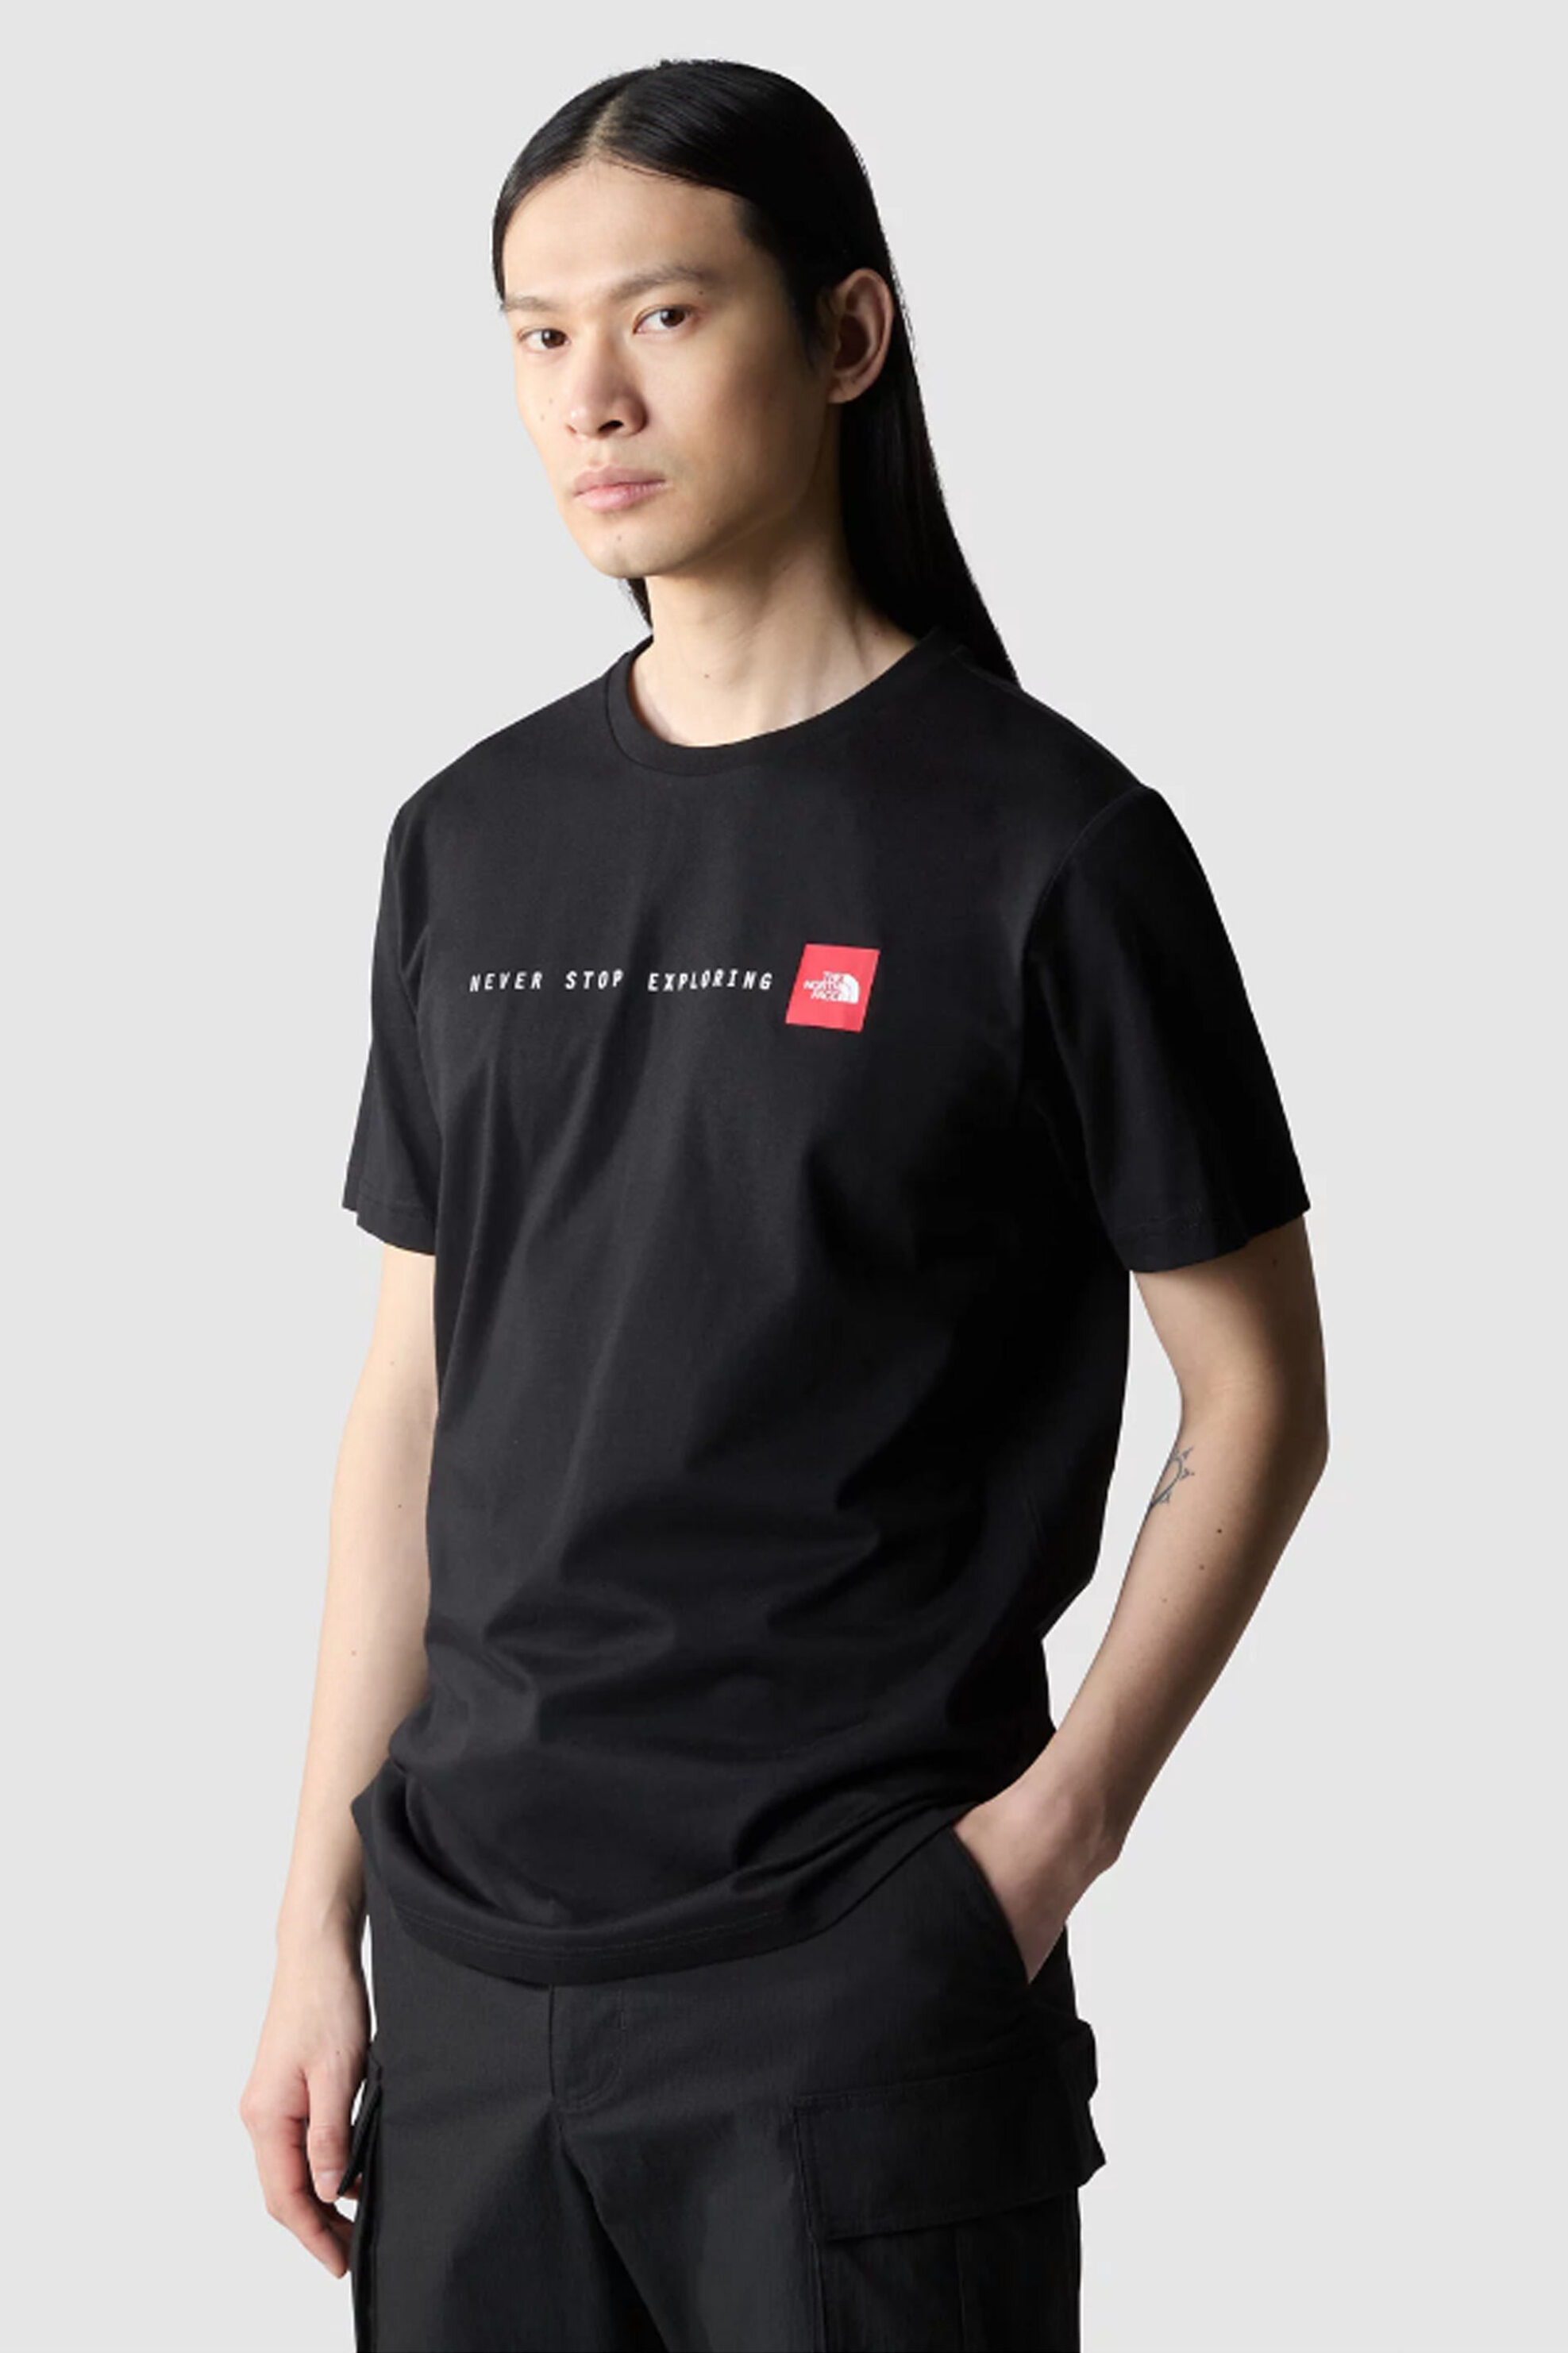 Ανδρική Μόδα > Ανδρικά Ρούχα > Ανδρικές Μπλούζες > Ανδρικά T-Shirts The North Face ανδρικό βαμβακερό T-shirt μονόχρωμο με contrast logo print "Never Stop Exploring" - NF0A87NSJK31 Μαύρο